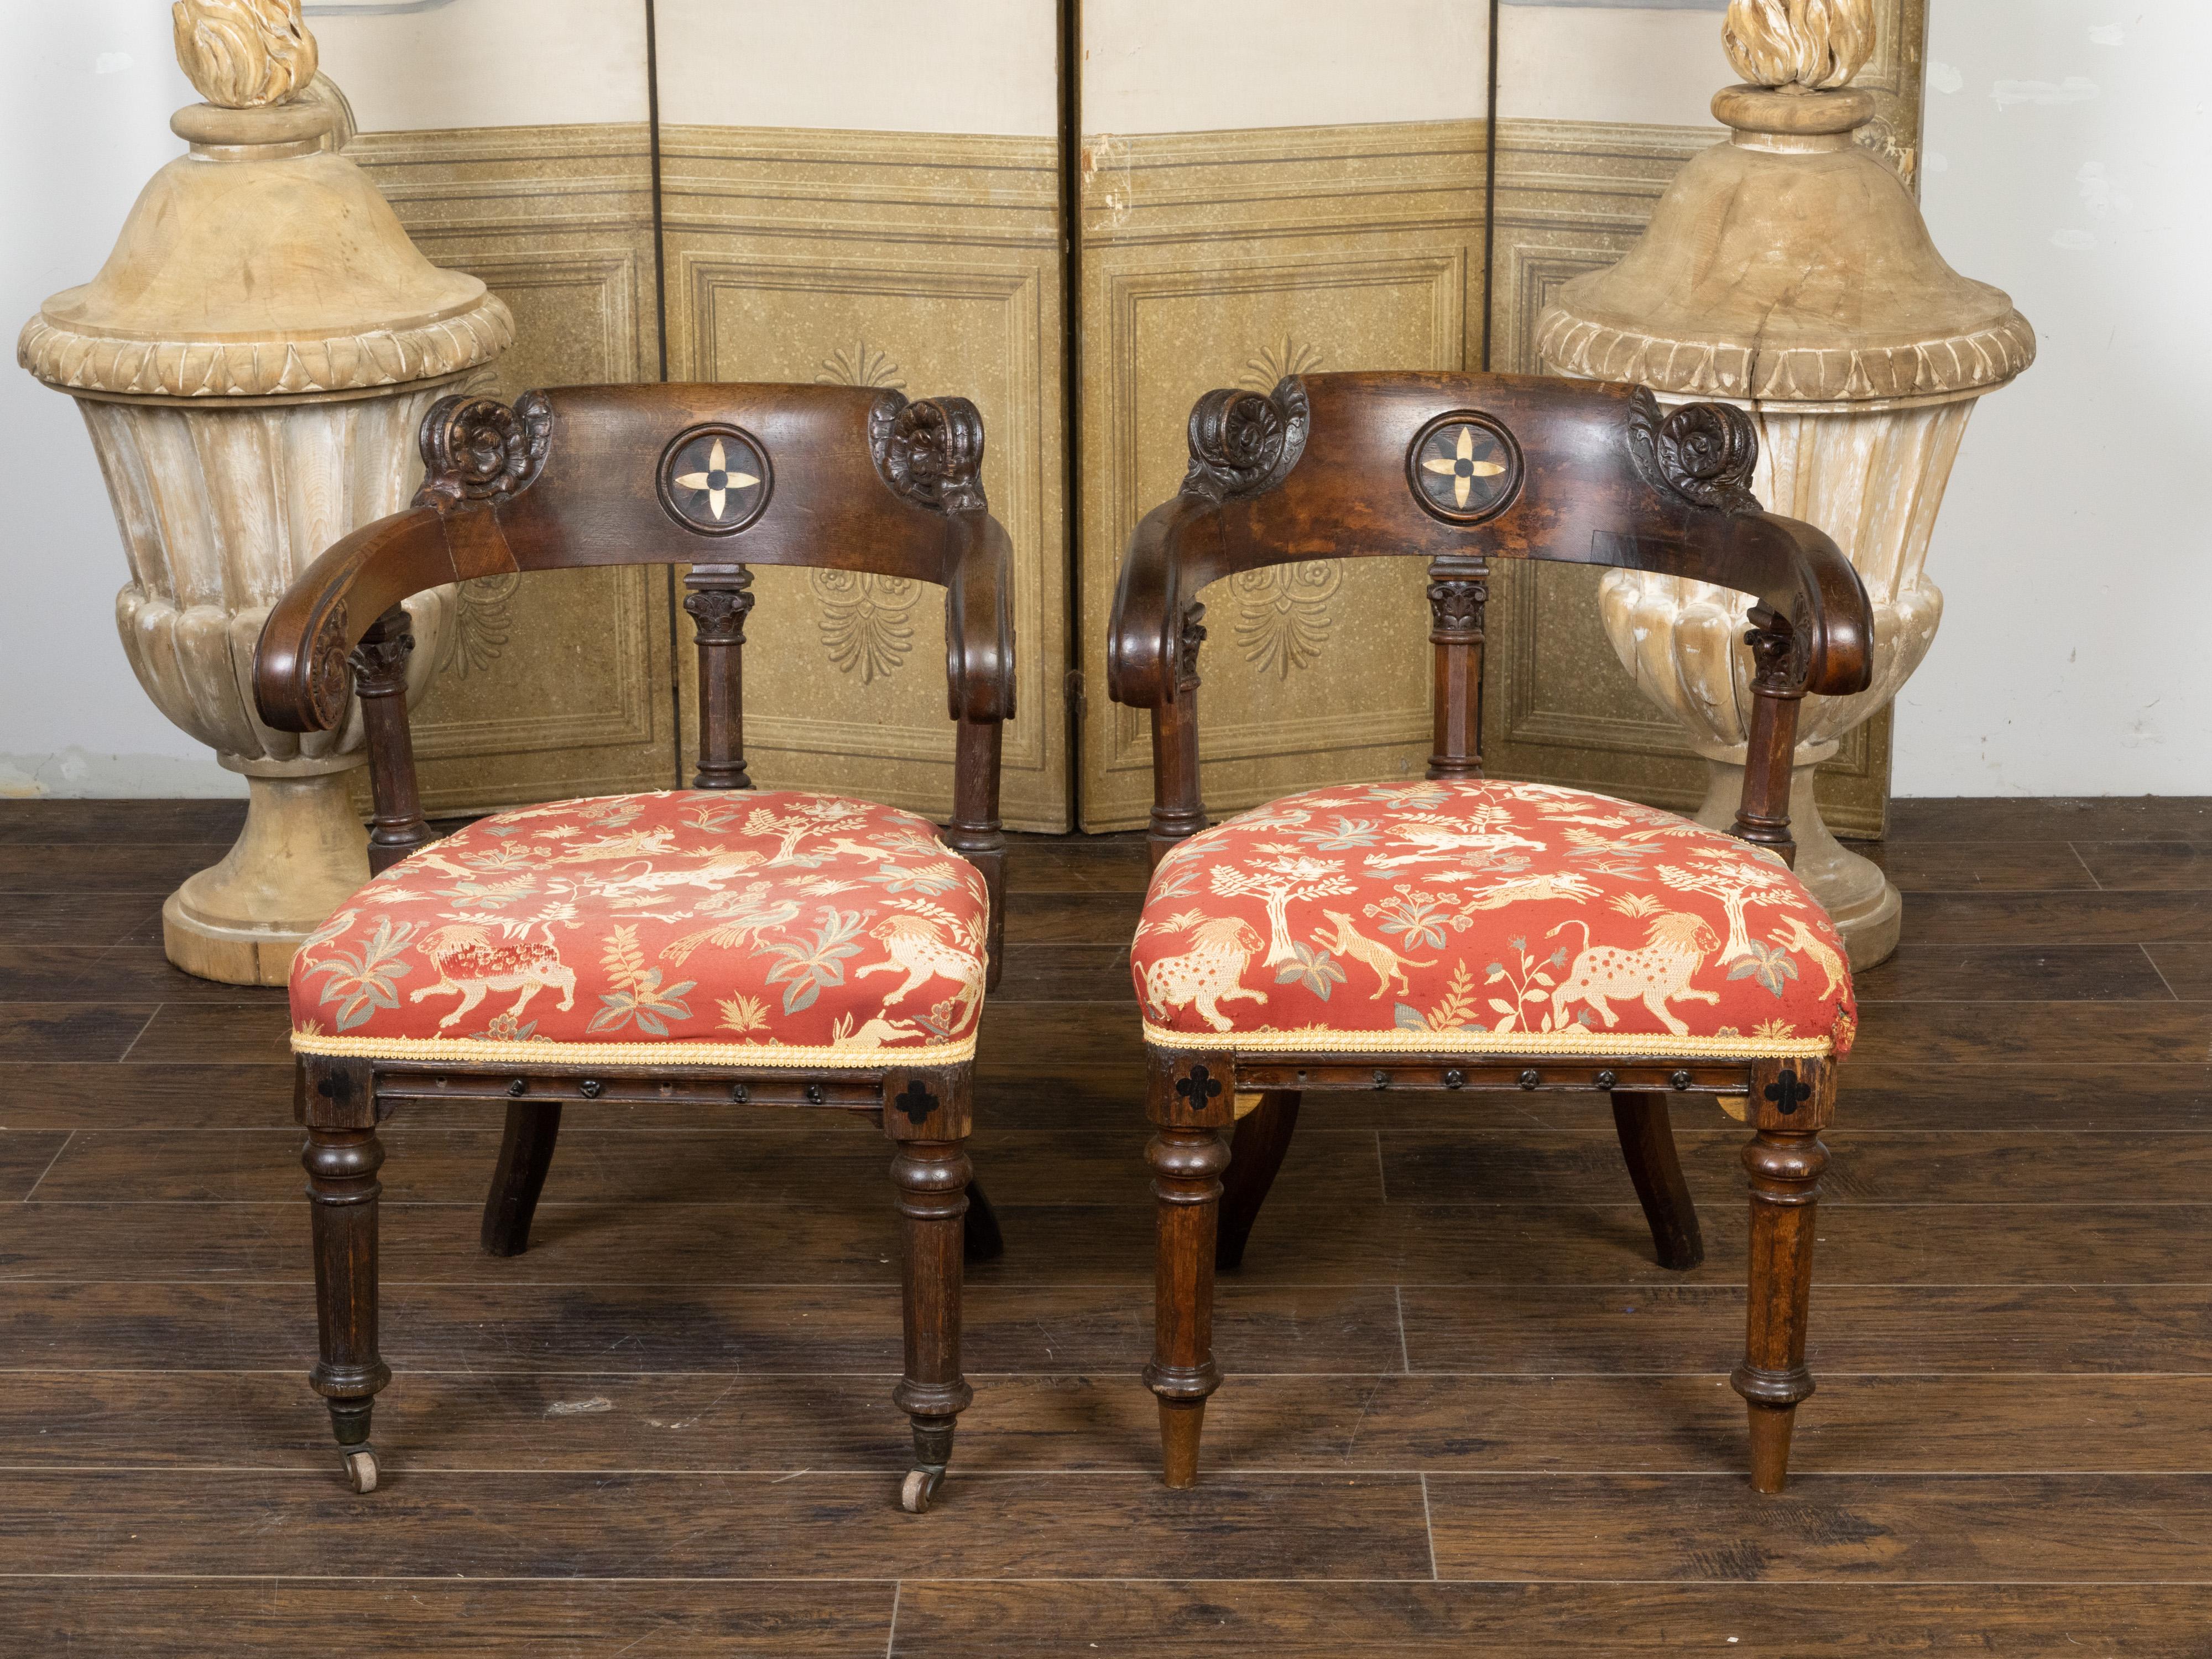 Ein Paar englische Klismos-Stühle aus Eiche im Regency-Stil aus dem 19. Jahrhundert, mit geschnitztem Rollendekor, geometrischer Einlage und altem Stoff. Dieses Paar Klismos-Stühle im Regency-Stil wurde im 19. Jahrhundert in England hergestellt und